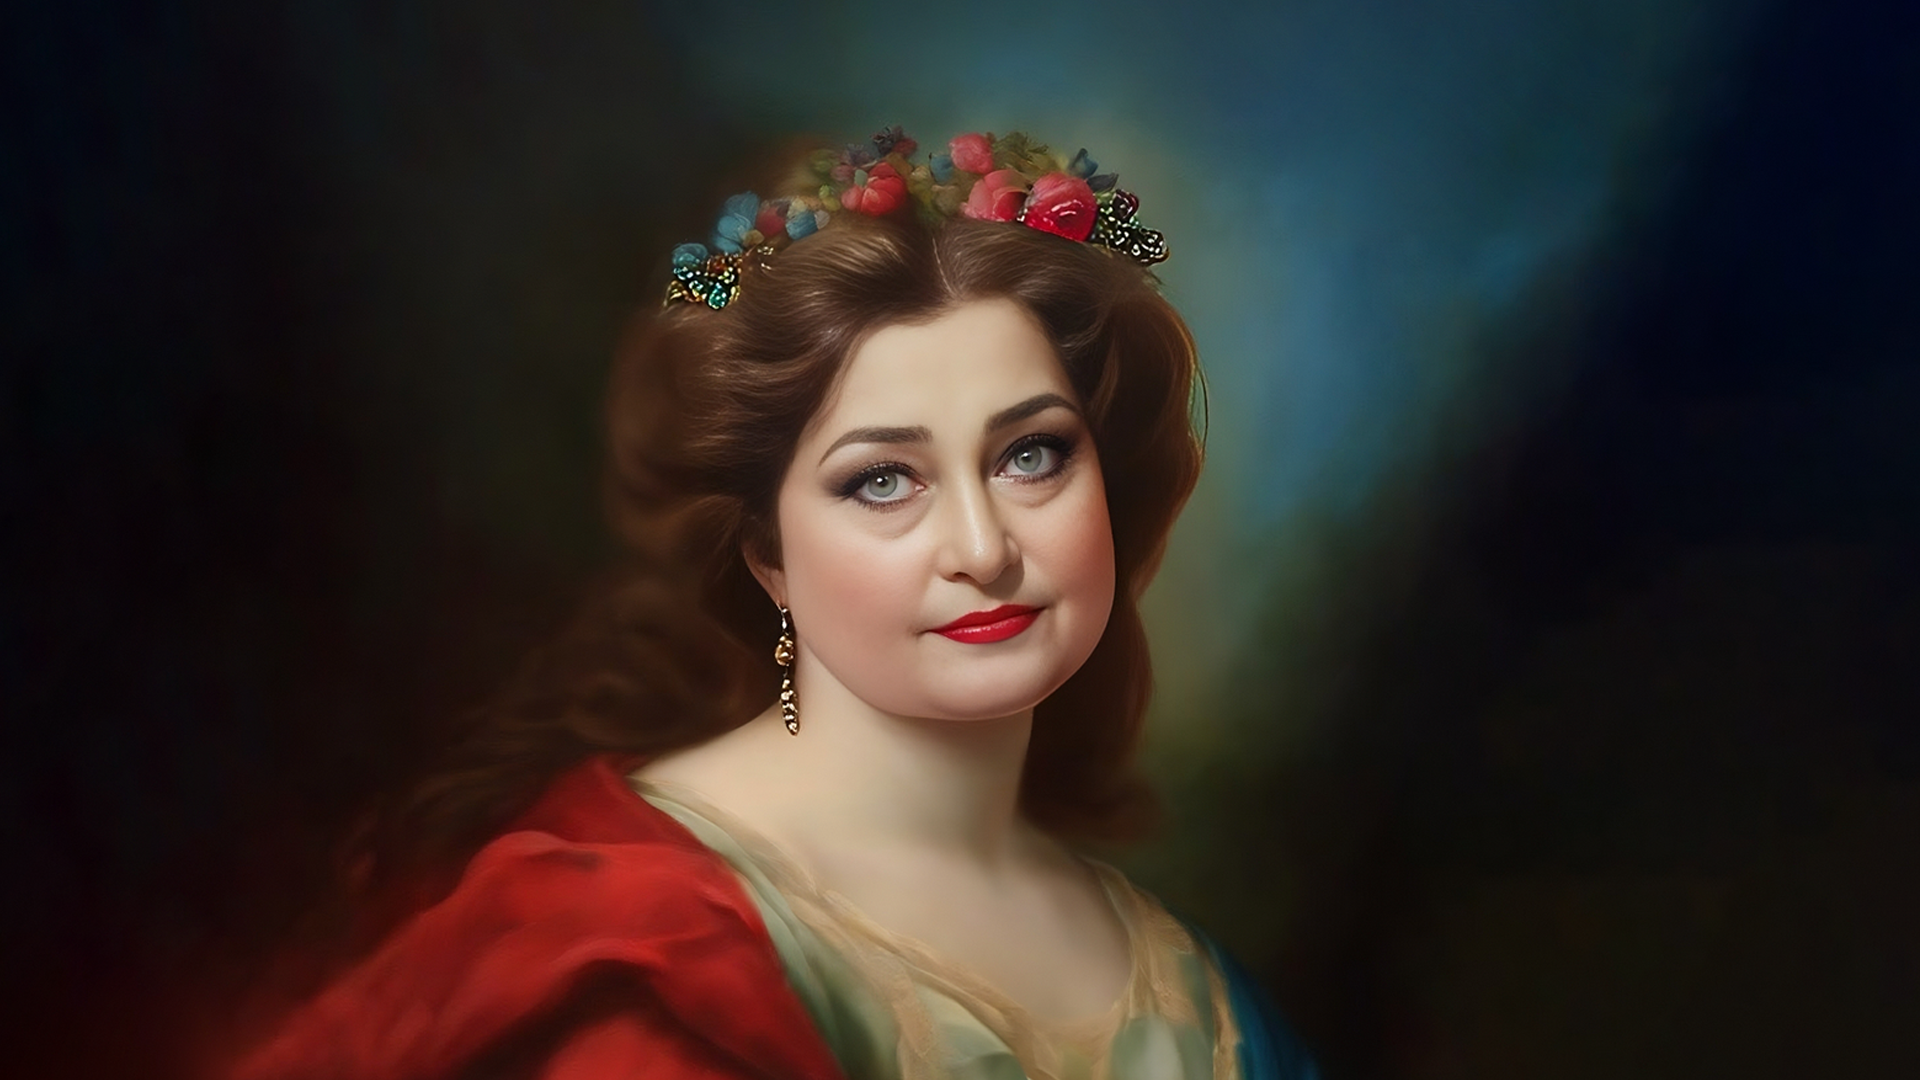 Portret kobiety w stylu obrazu Rubensa, kobieta ma długie brązowe włosy, na słowie wianek z kwiatów, czerwone usta, kolczyki